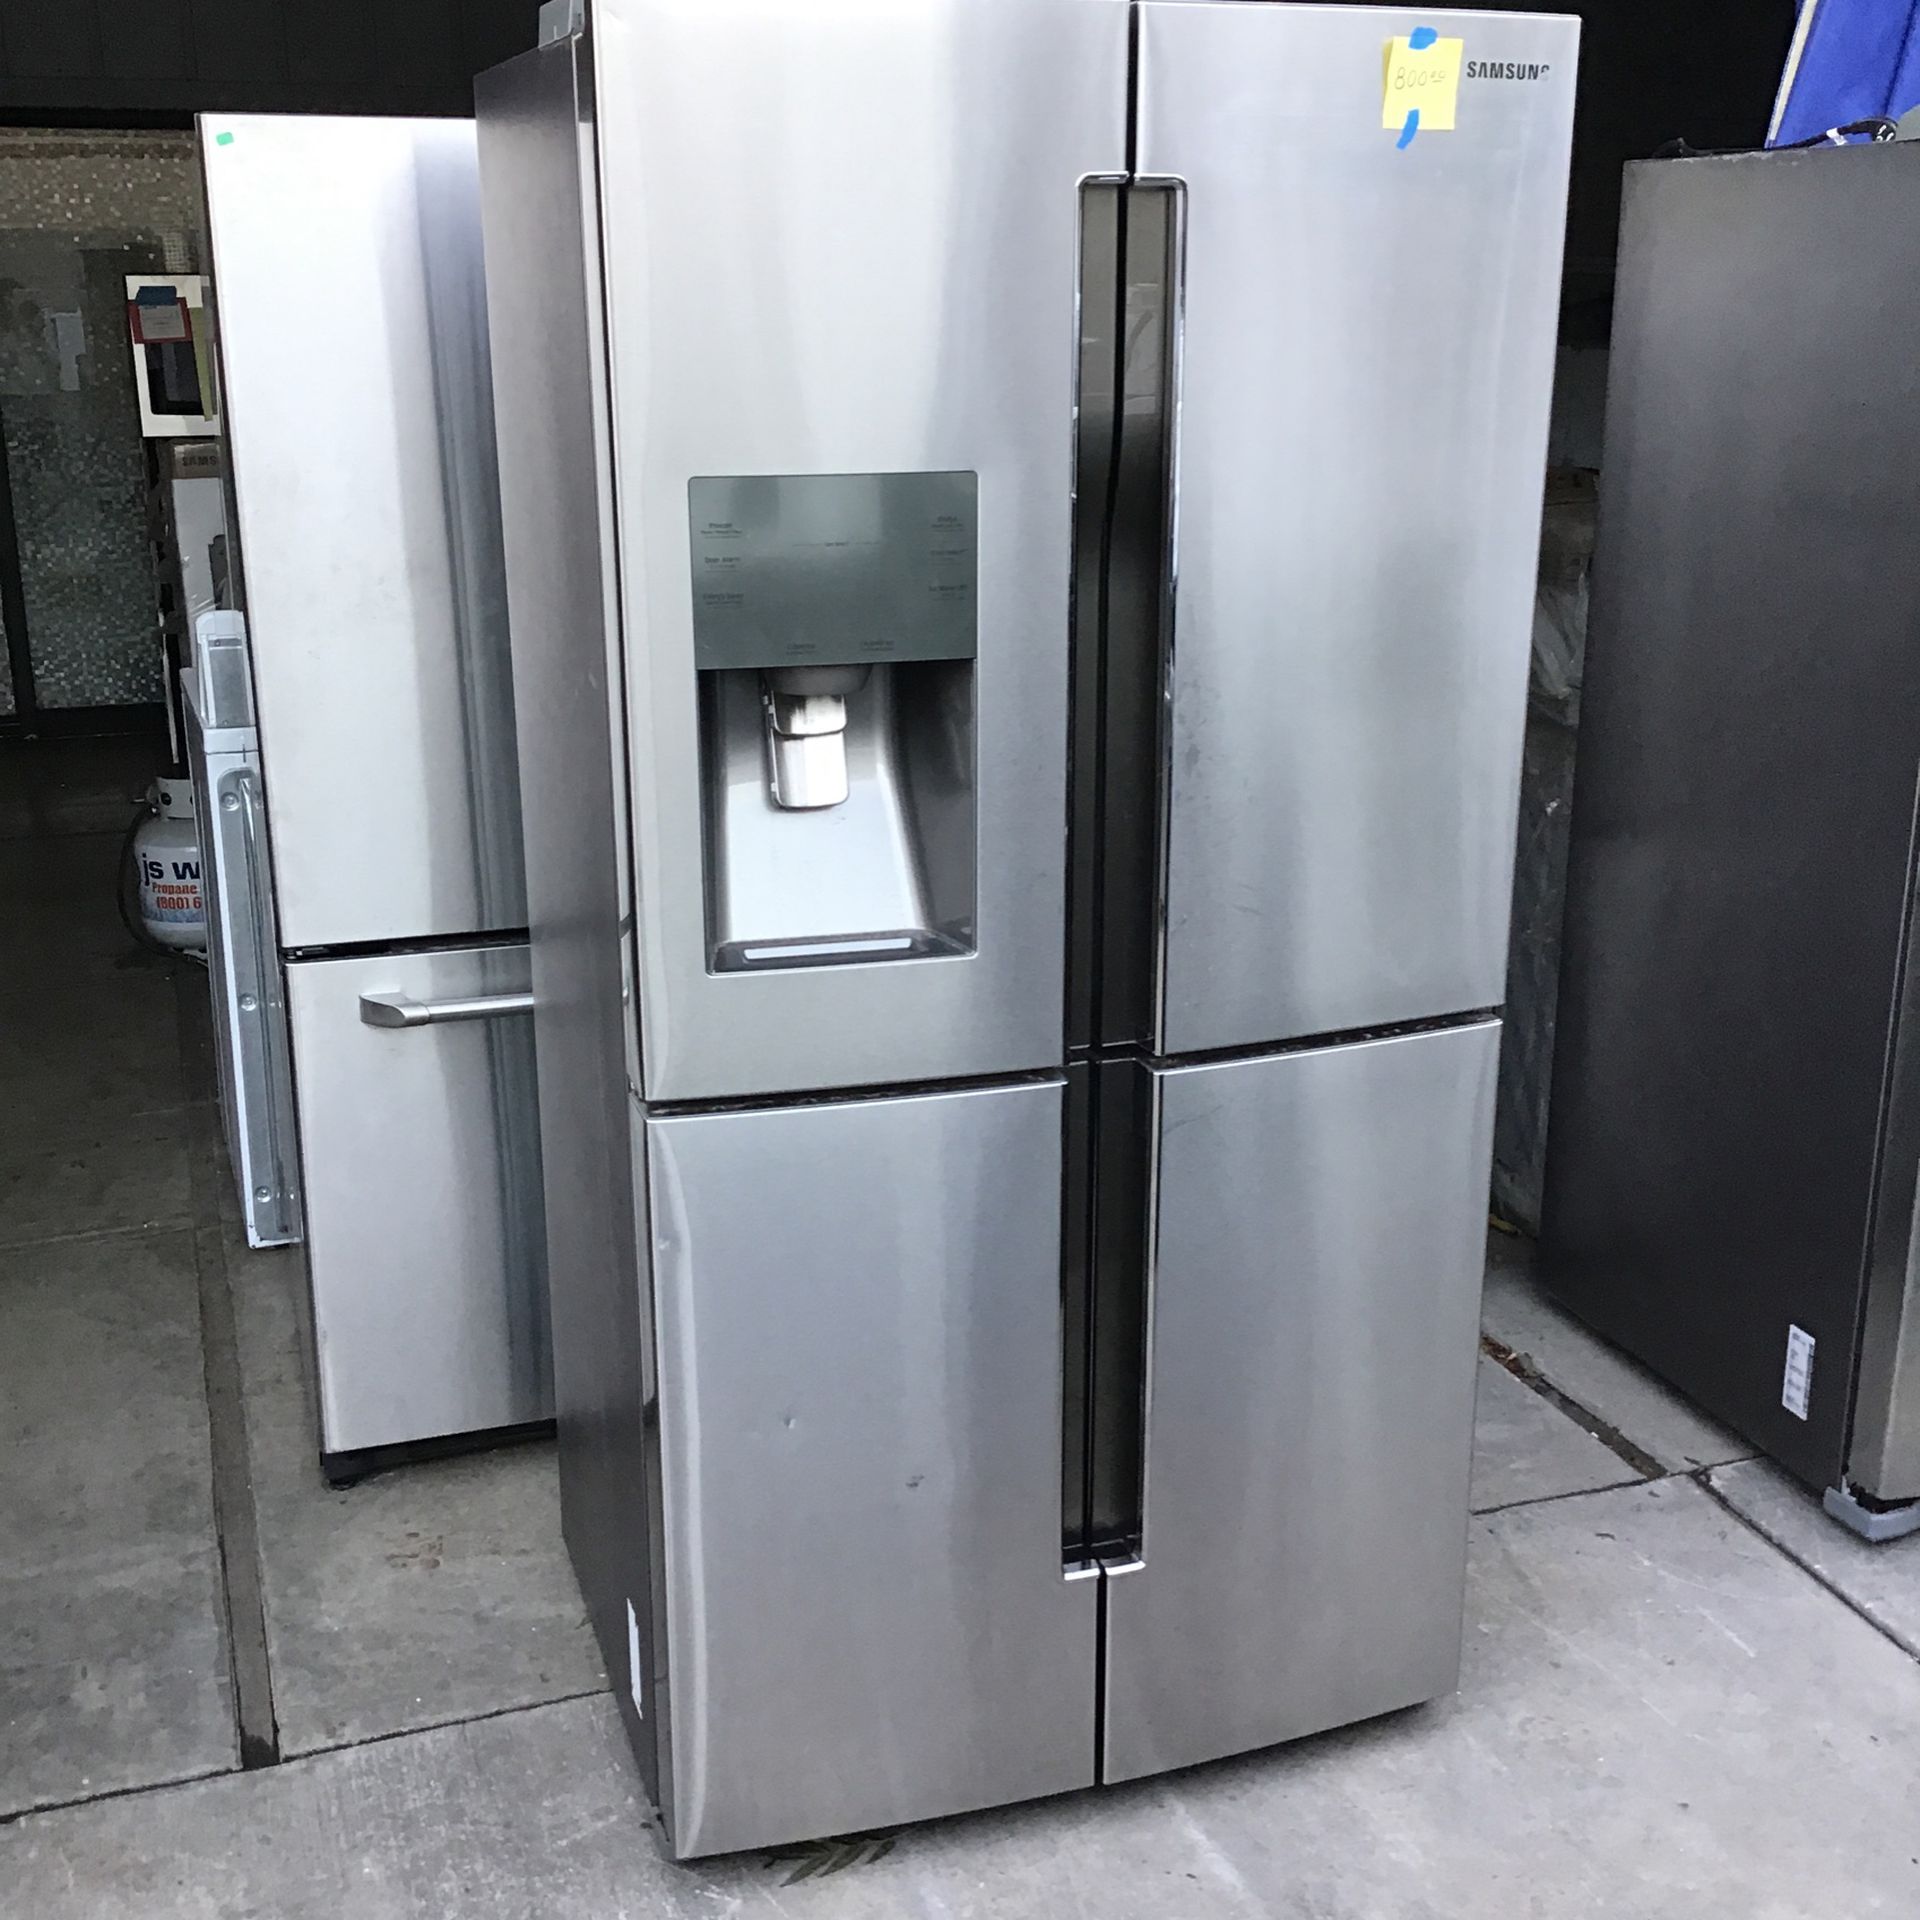 Samsung 4 Door Refrigerator In Stainless Steel 